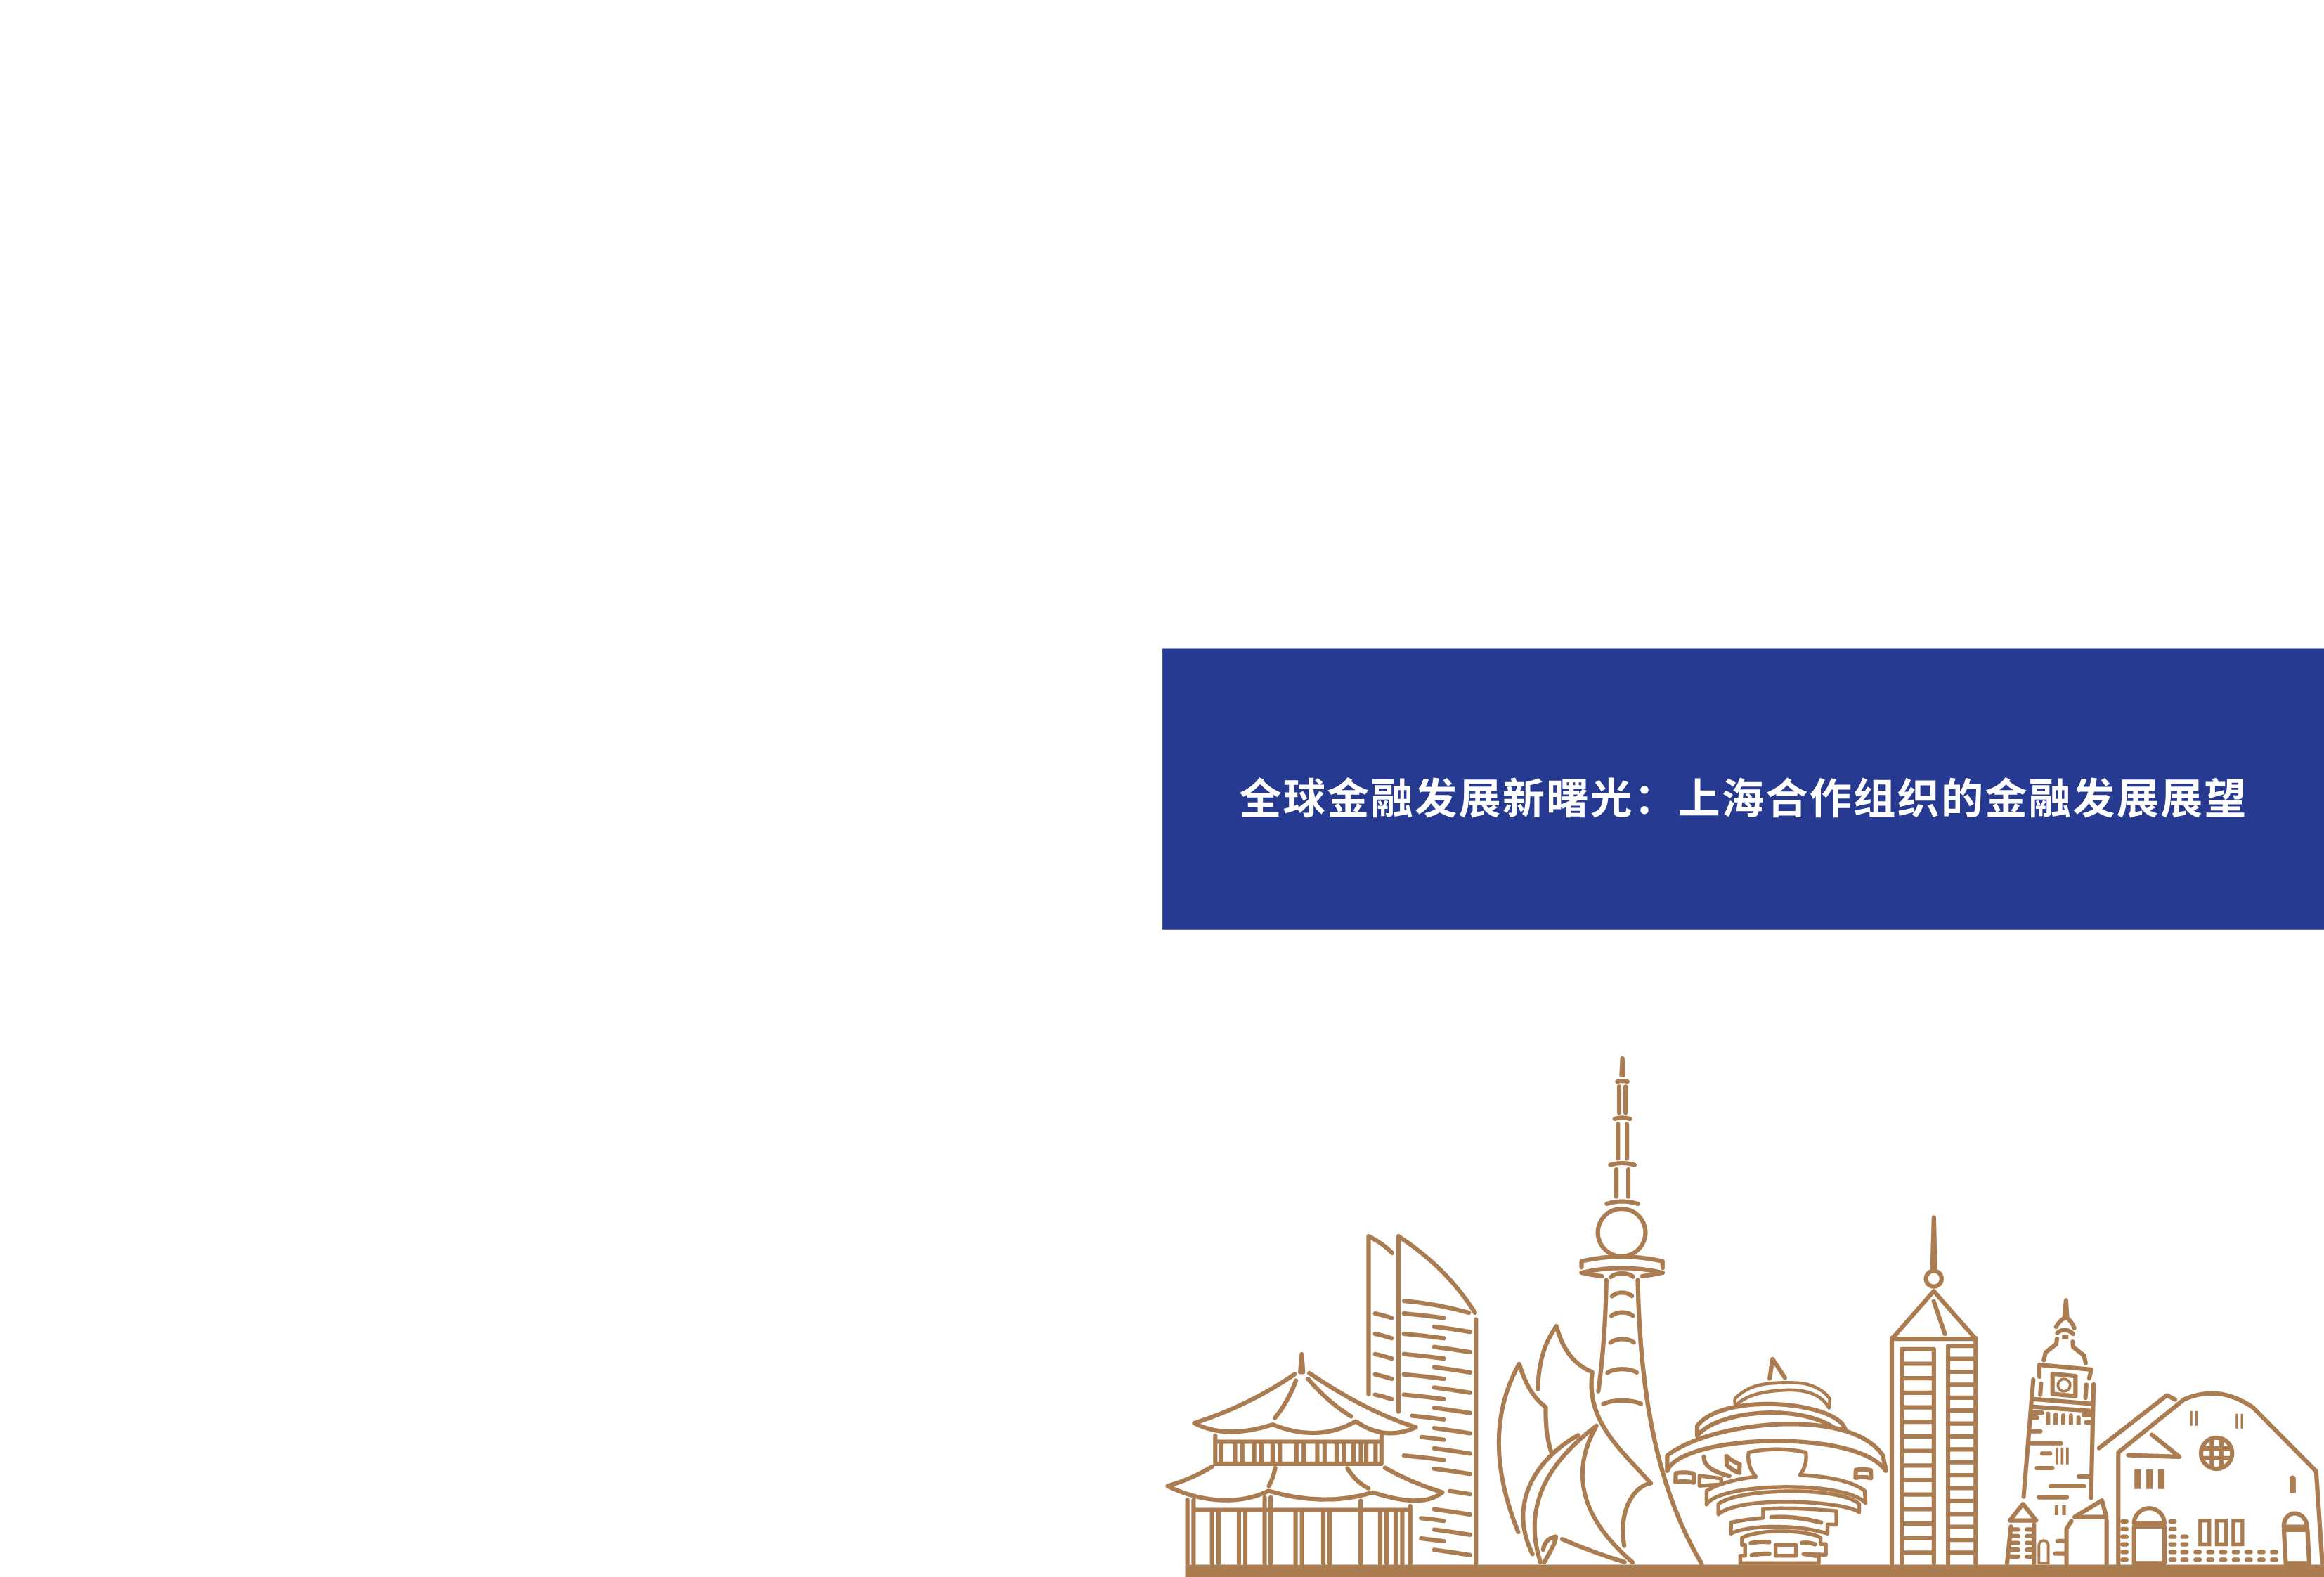 人大重阳-全球金融发展新曙光：上海合作组织的金融发展展望数据 -2021.11-29页